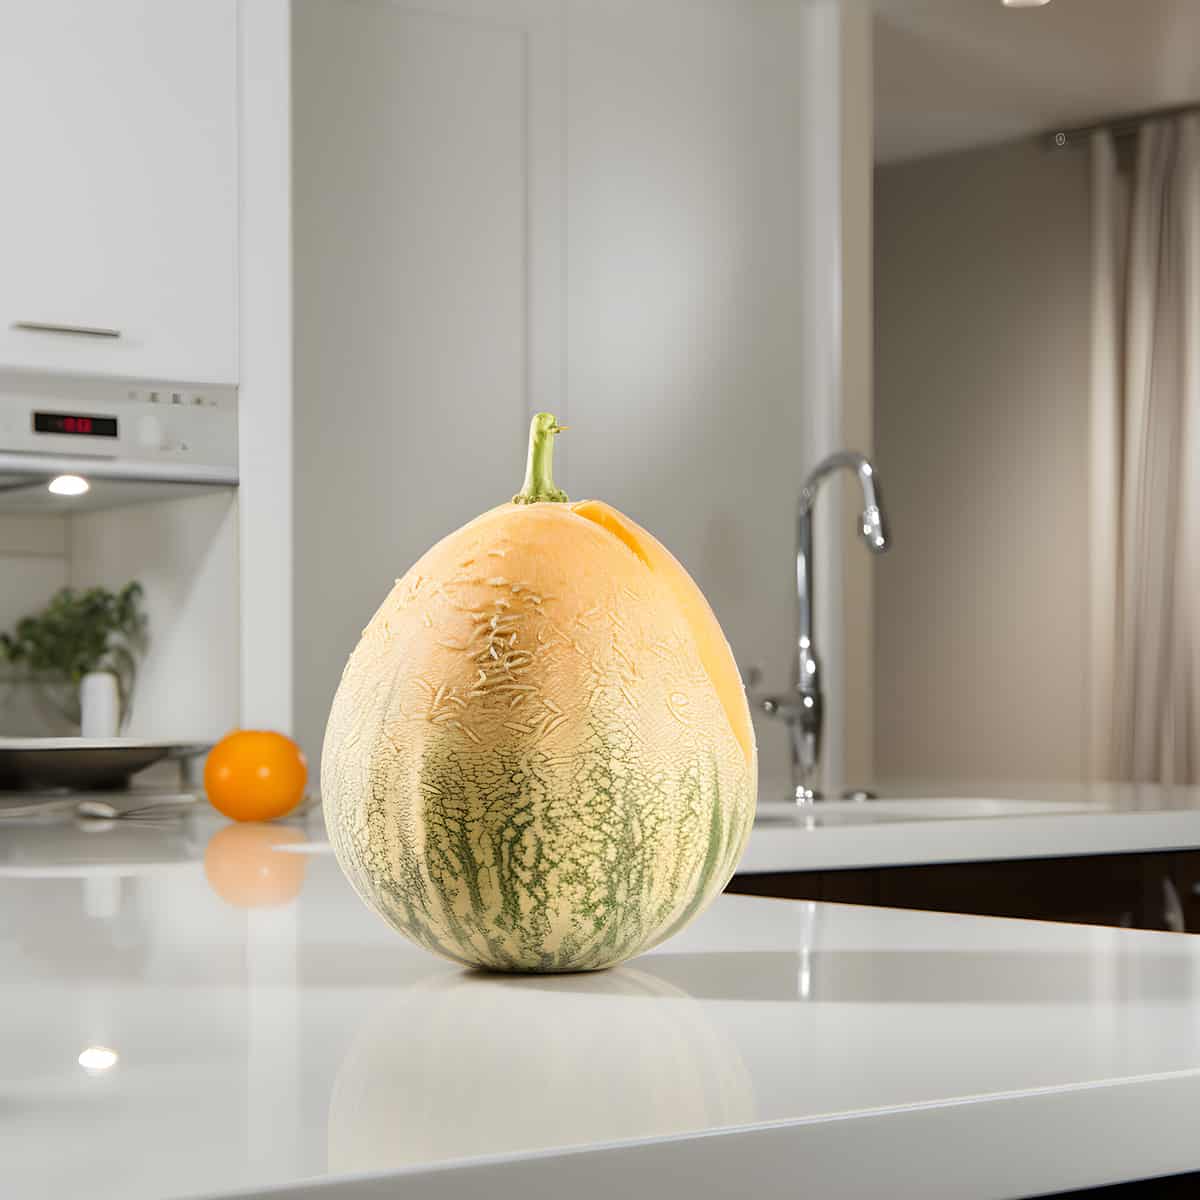 Crane Melon on a kitchen counter